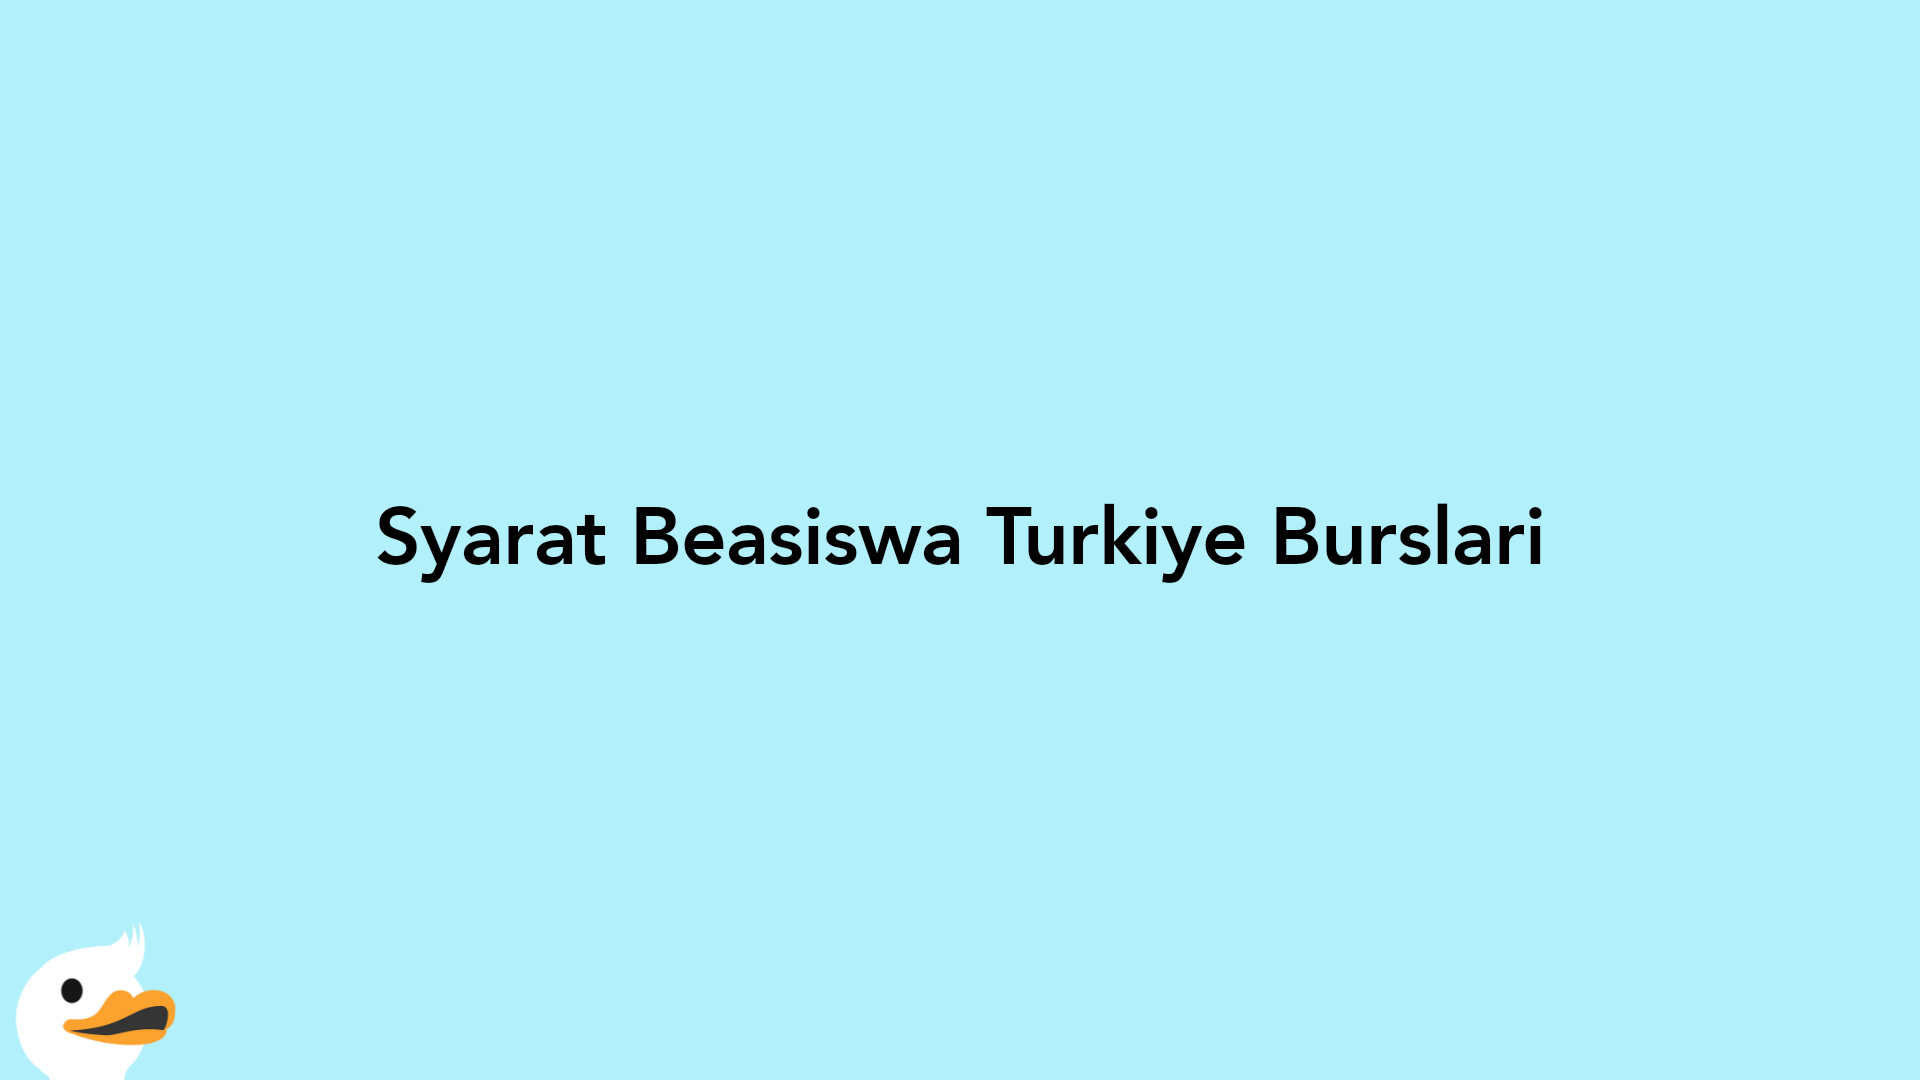 Syarat Beasiswa Turkiye Burslari